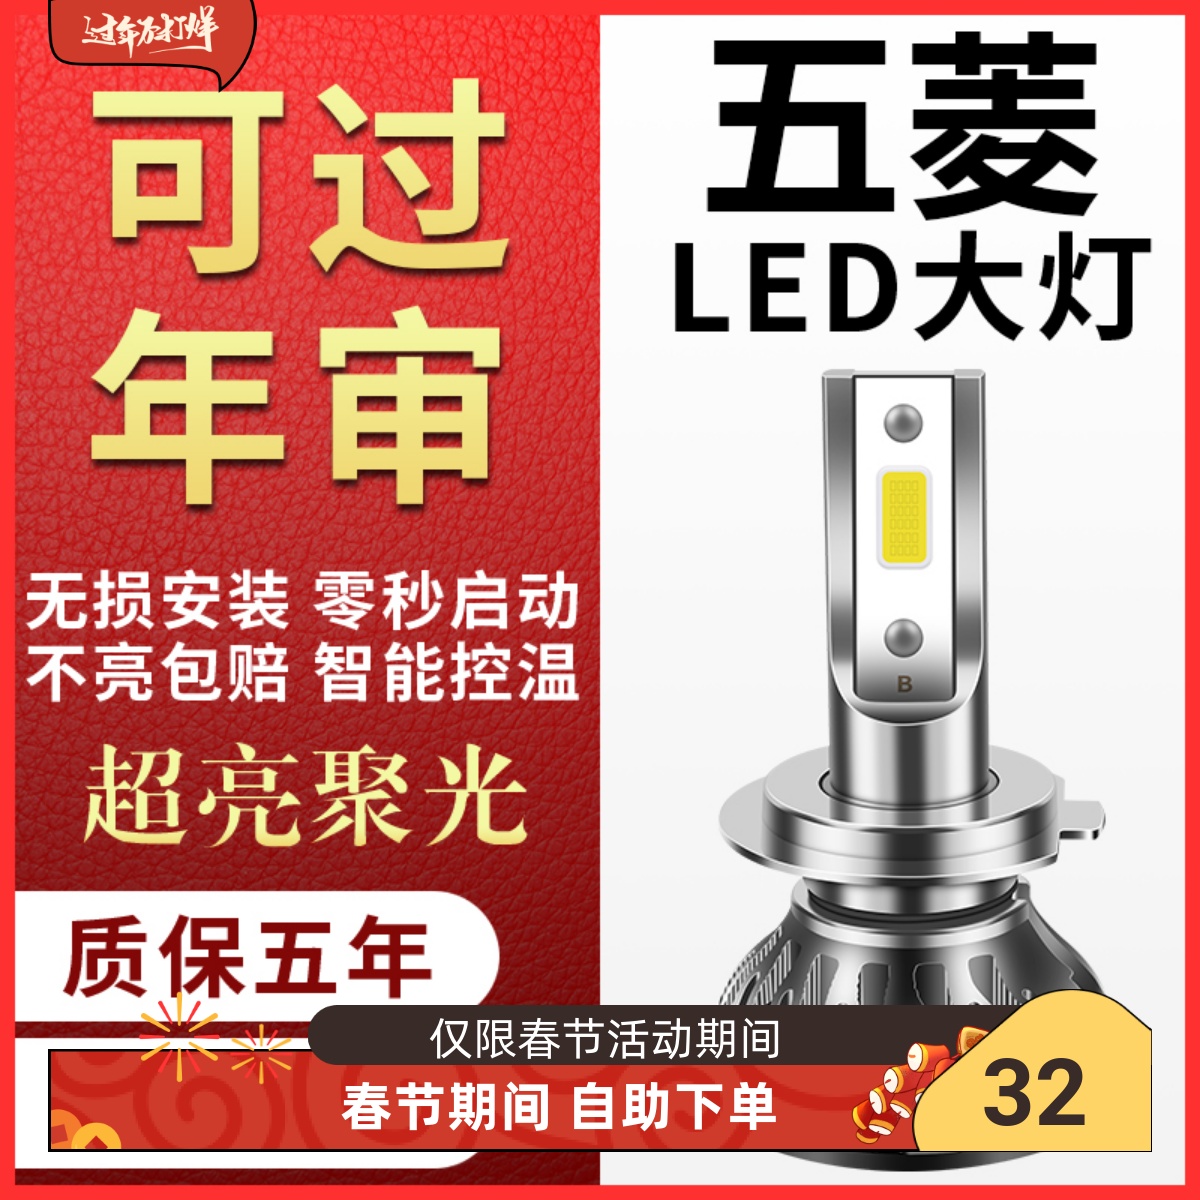 武陵宏光/栄光/志光 S/V ジャーニー S1 特別な LED ヘッドライトロービームハイビームフロント車の電球は超明るい